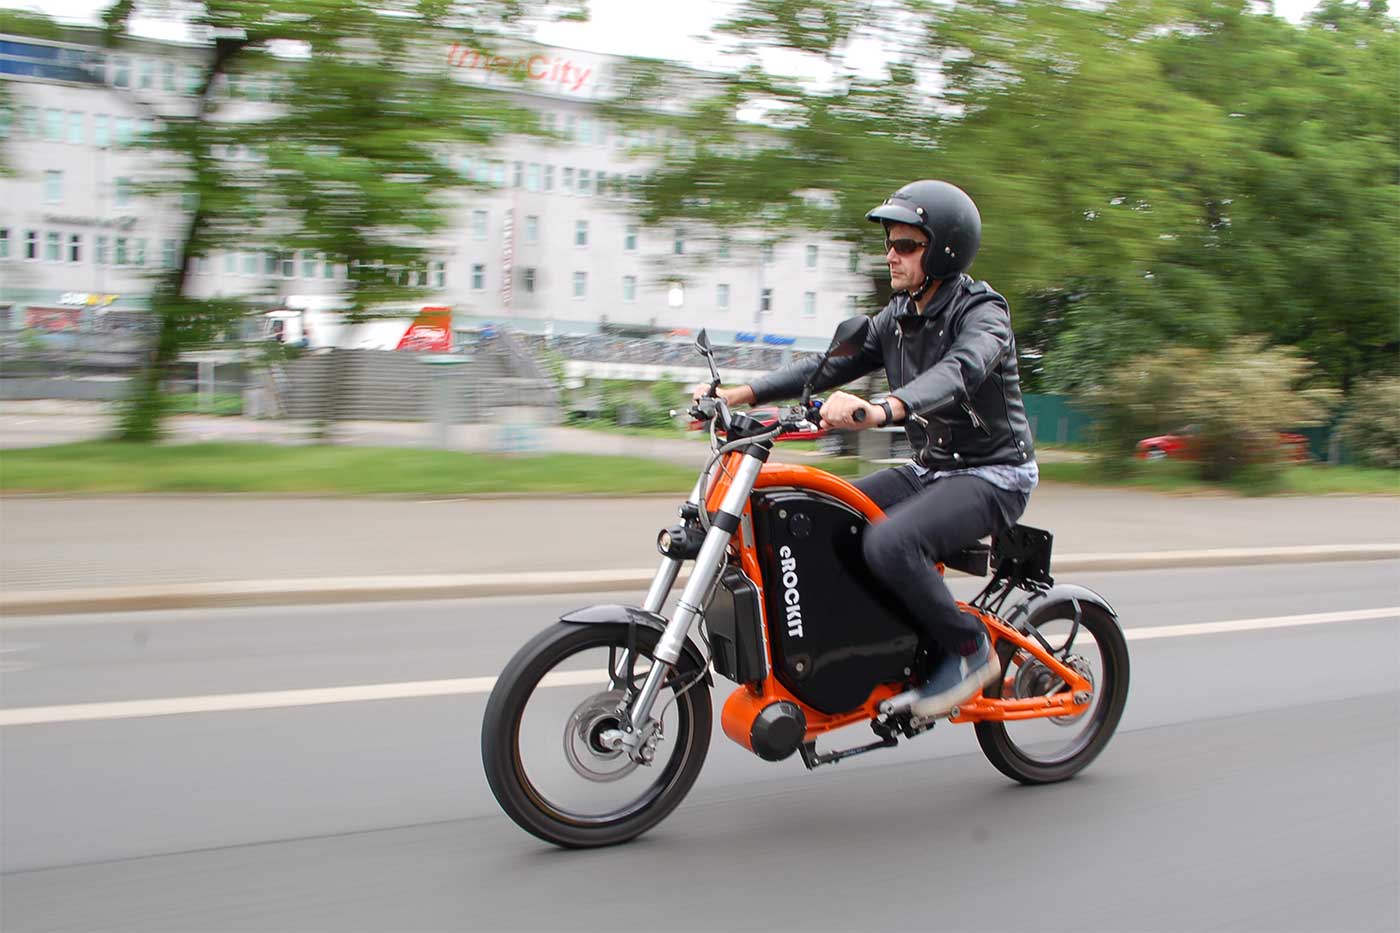 eRockit : la moto électrique allemande renaît dans une nouvelle version